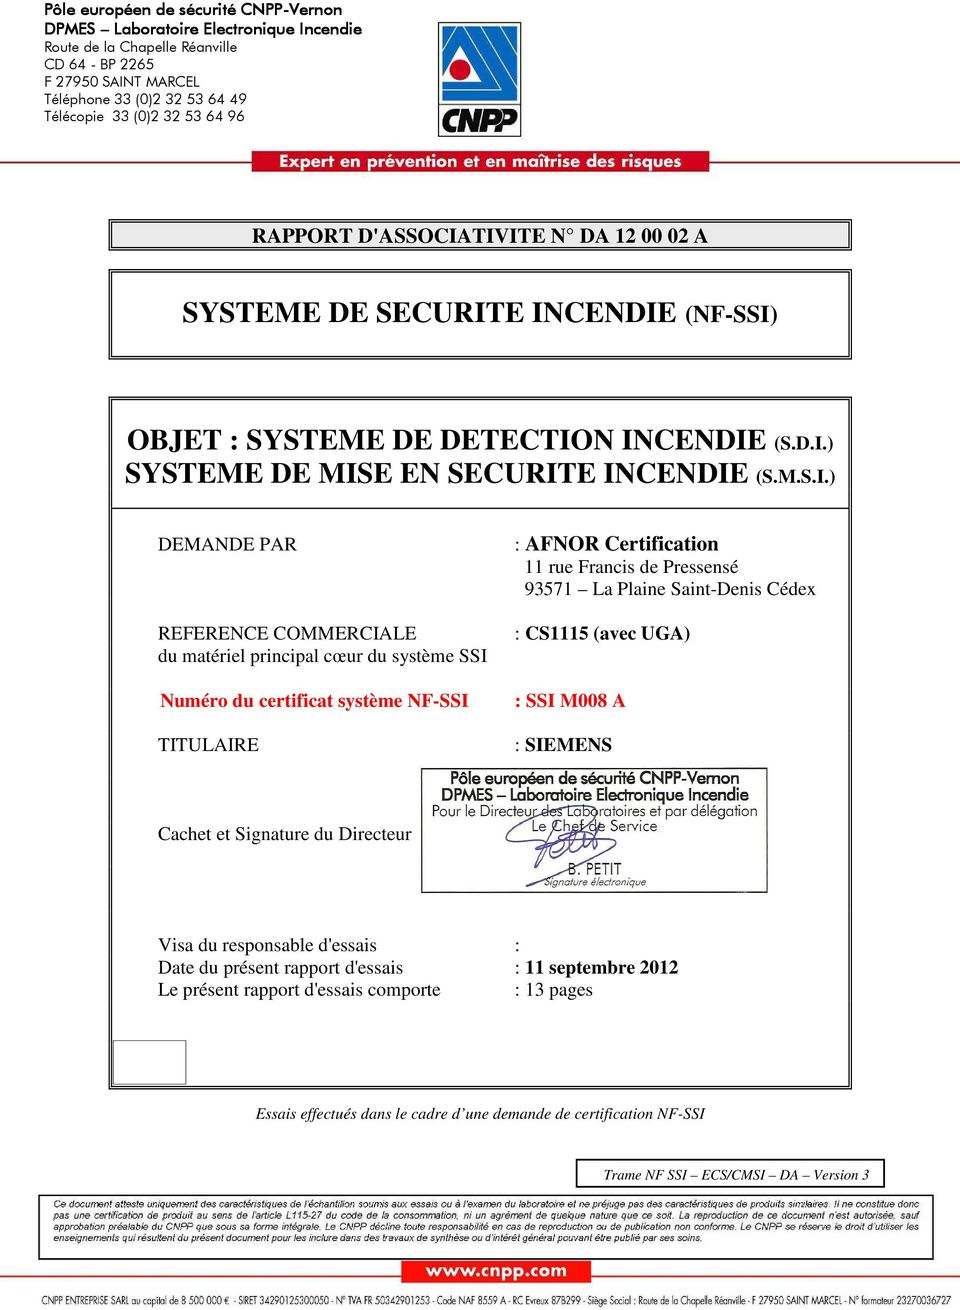 TIVITE SYSTEME DE SECURITE INCENDIE (NF-SSI) OBJET : SYSTEME DE DETECTION INCENDIE (S.D.I.) SYSTEME DE MISE EN SECURITE INCENDIE (S.M.S.I.) DEMANDE PAR REFERENCE COMMERCIALE du matériel principal